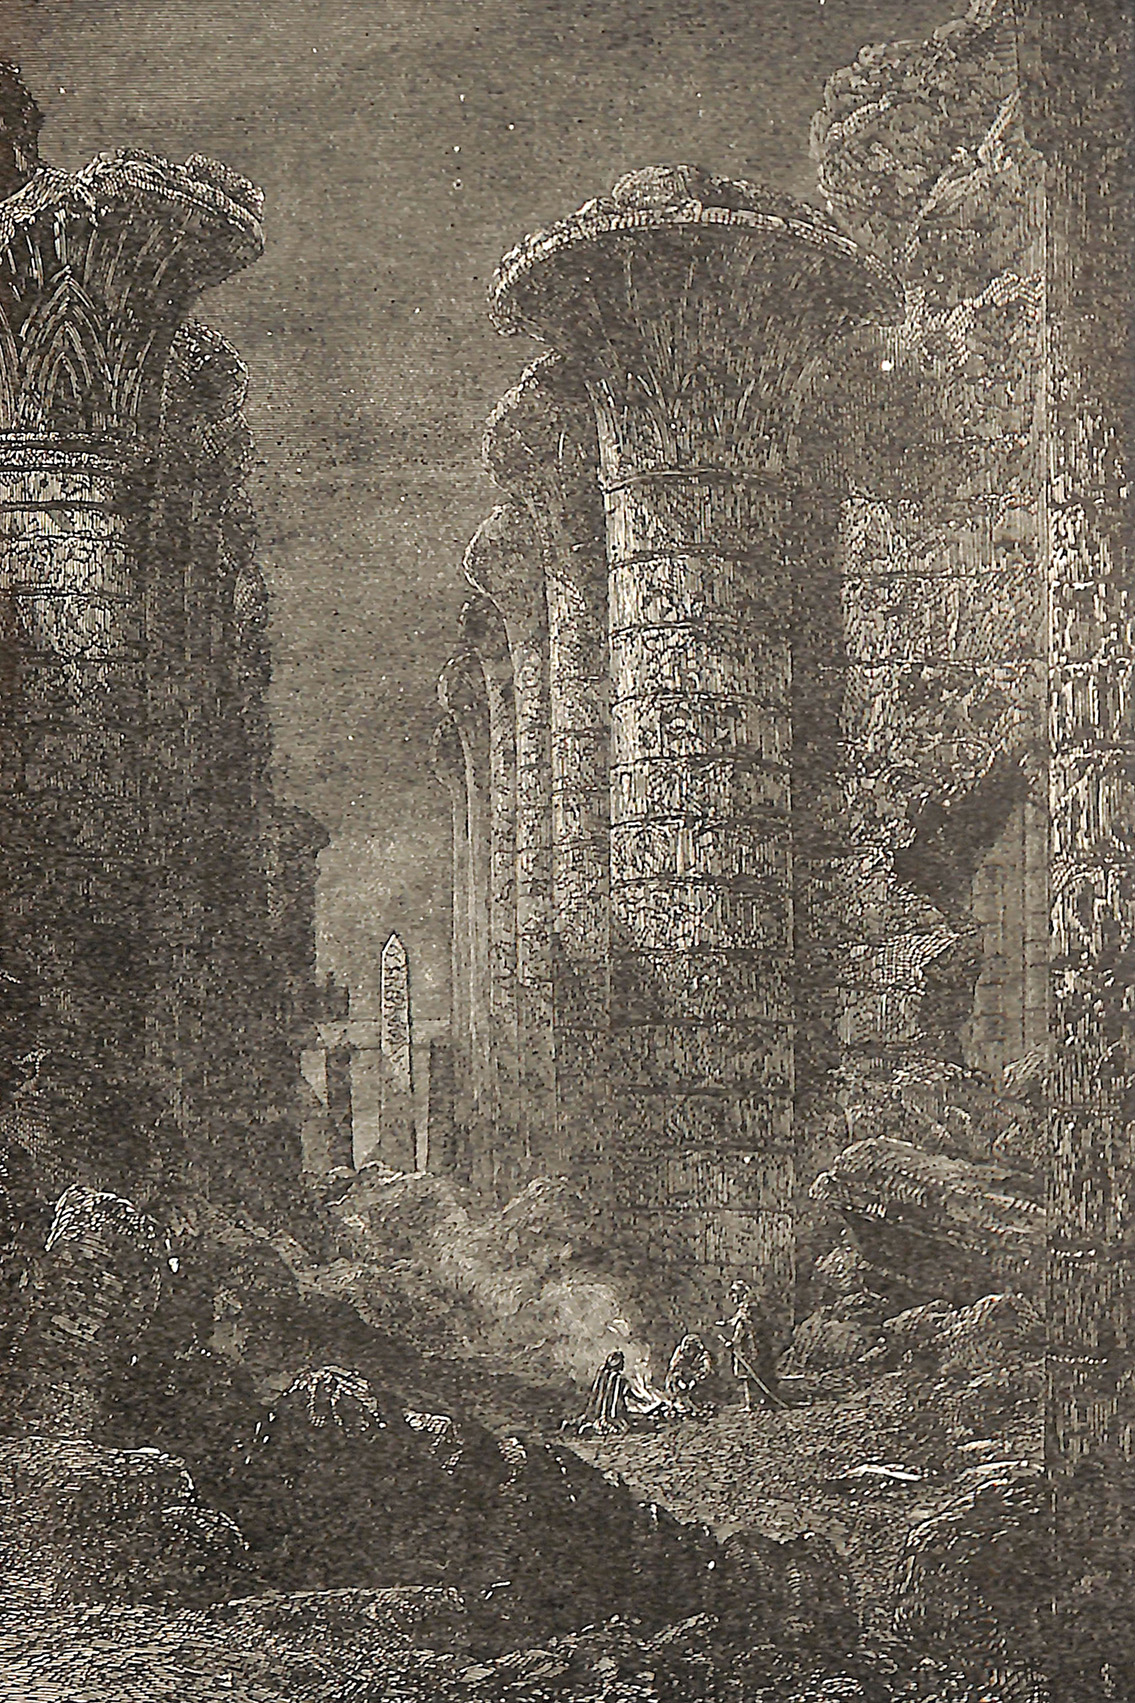 Columns of Karnac